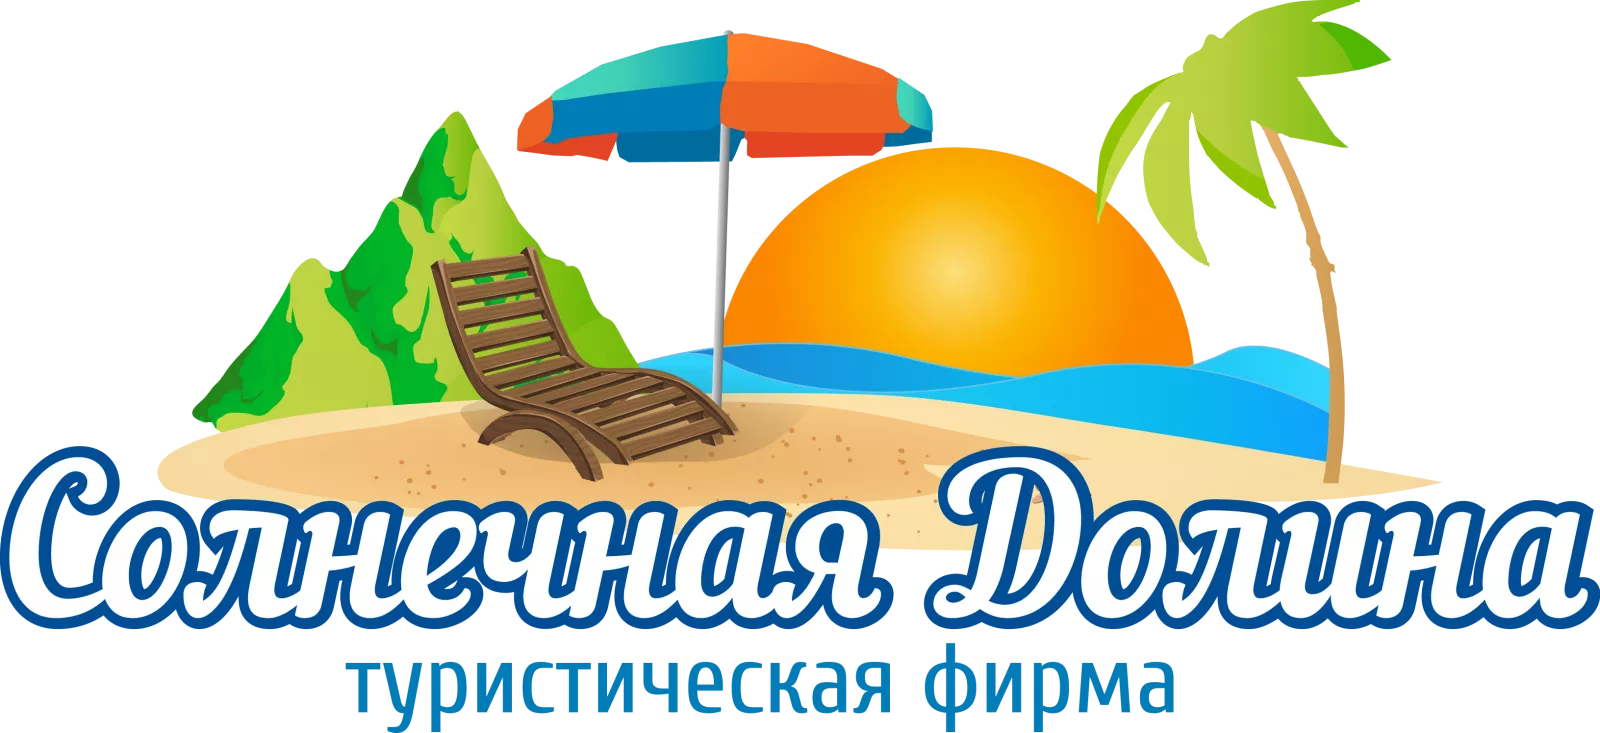 Курорт слоган. Логотип туристической фирмы. Логотип для туристической фирмы турист. Туристическое агентство иллюстрация. Логотип турагентства.